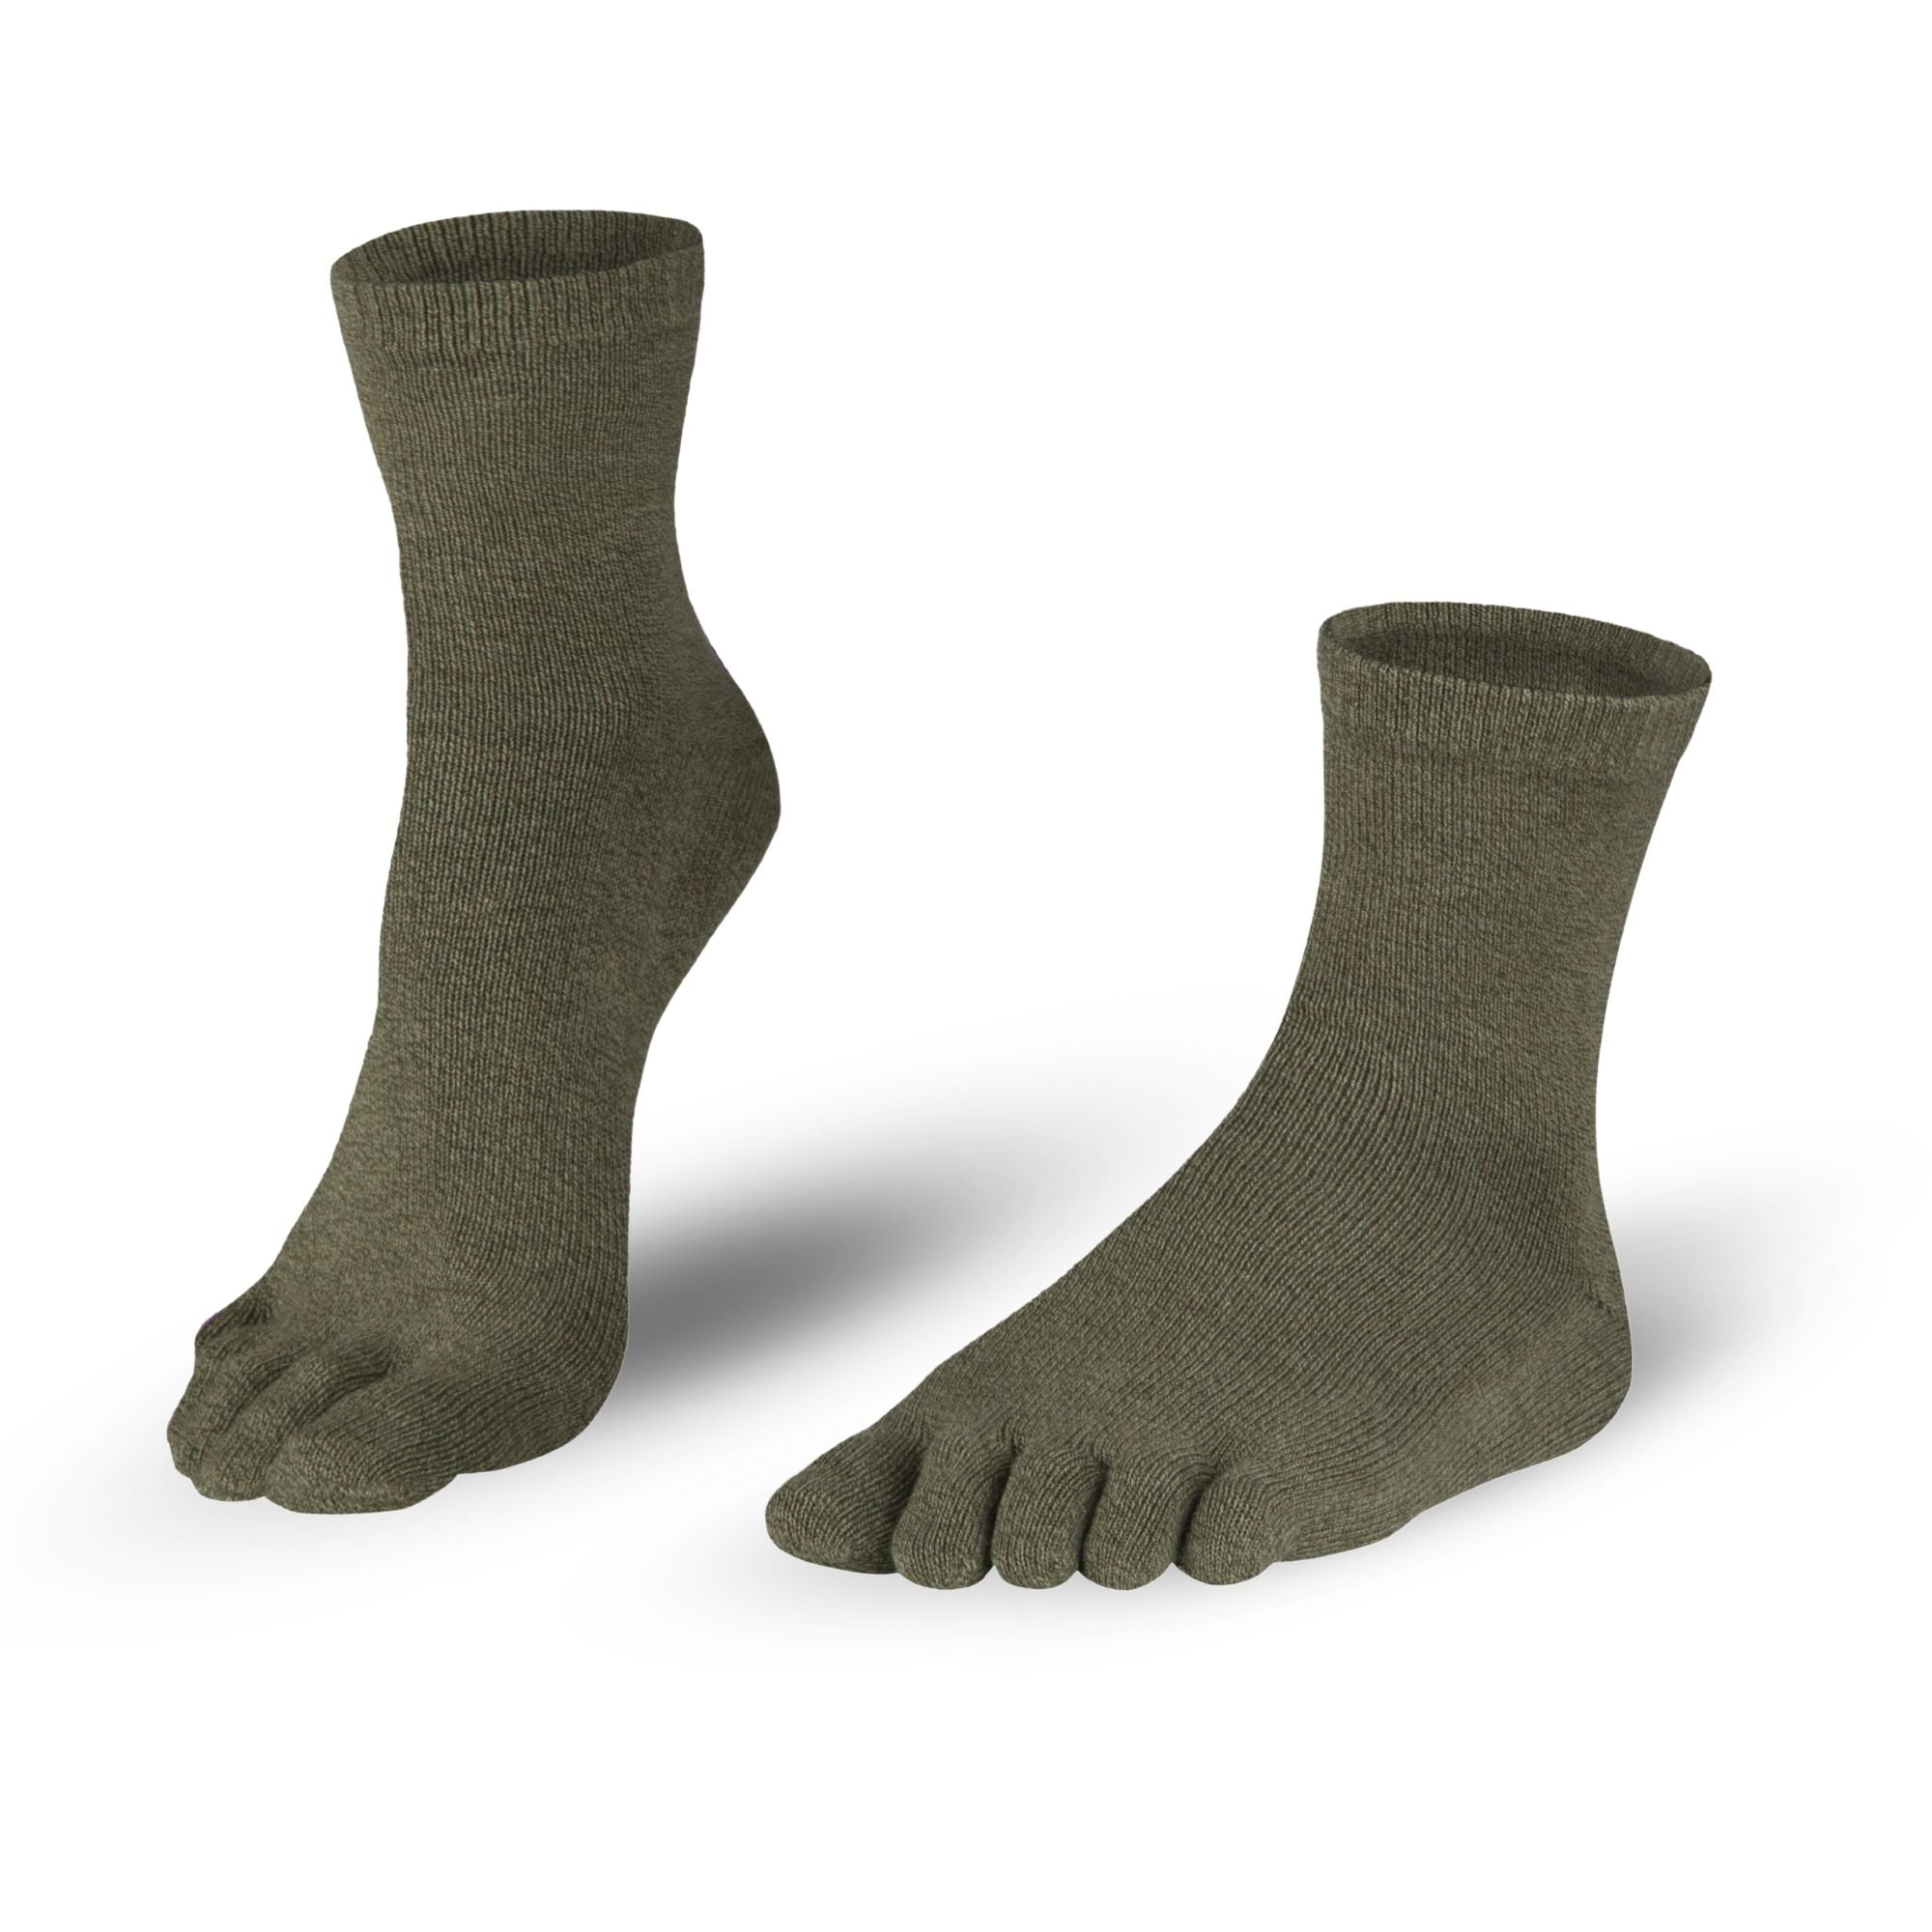 Katoenenteensokken sokken in grijs-groen voor mannen en vrouwen